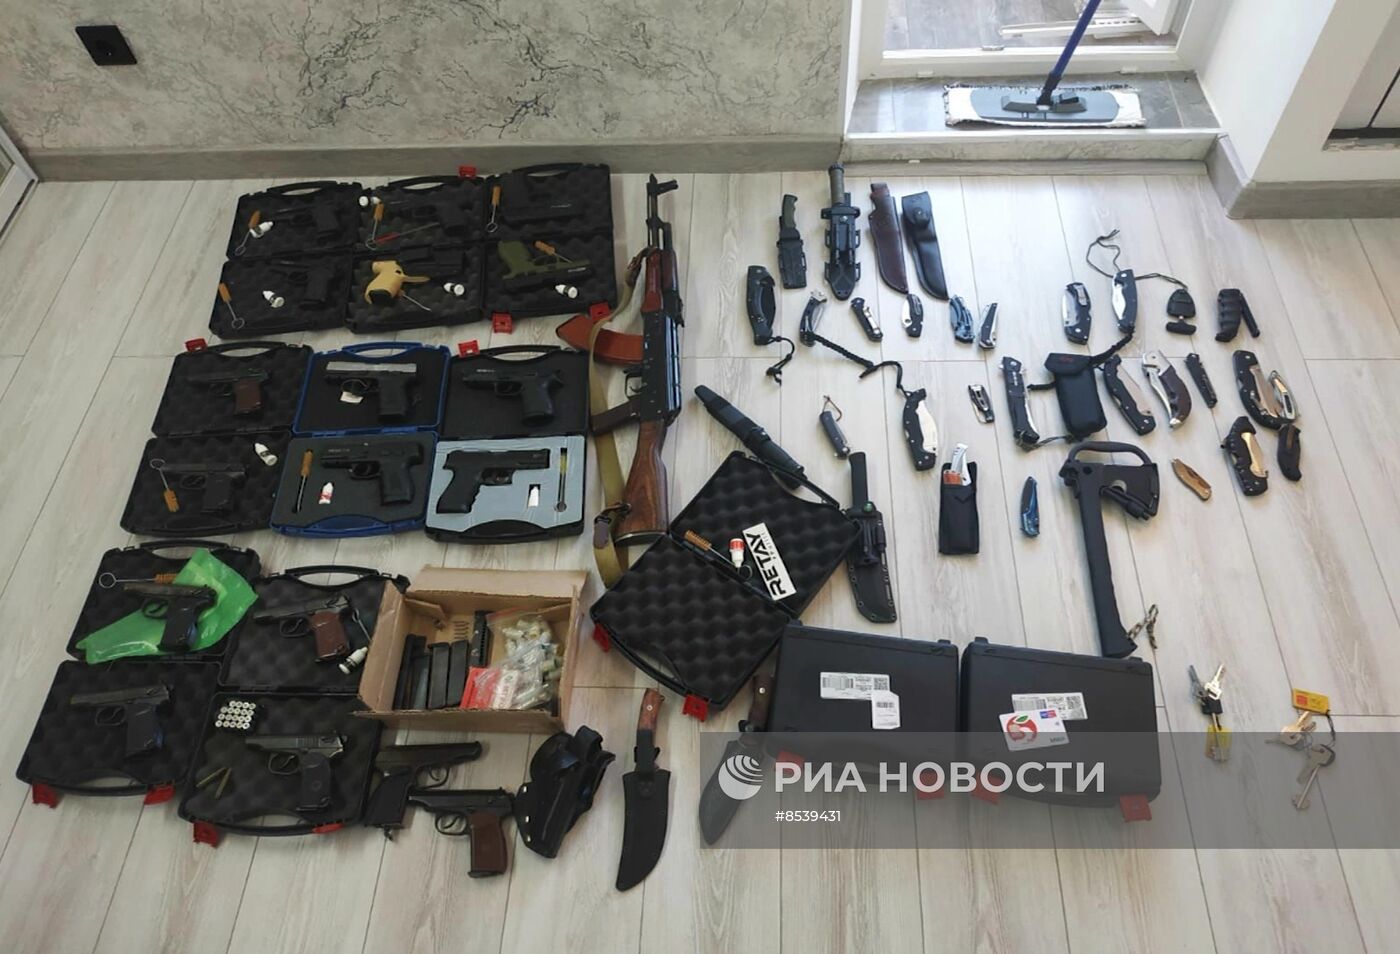 ФСБ РФ пресекла преступную деятельность по незаконному обороту оружия